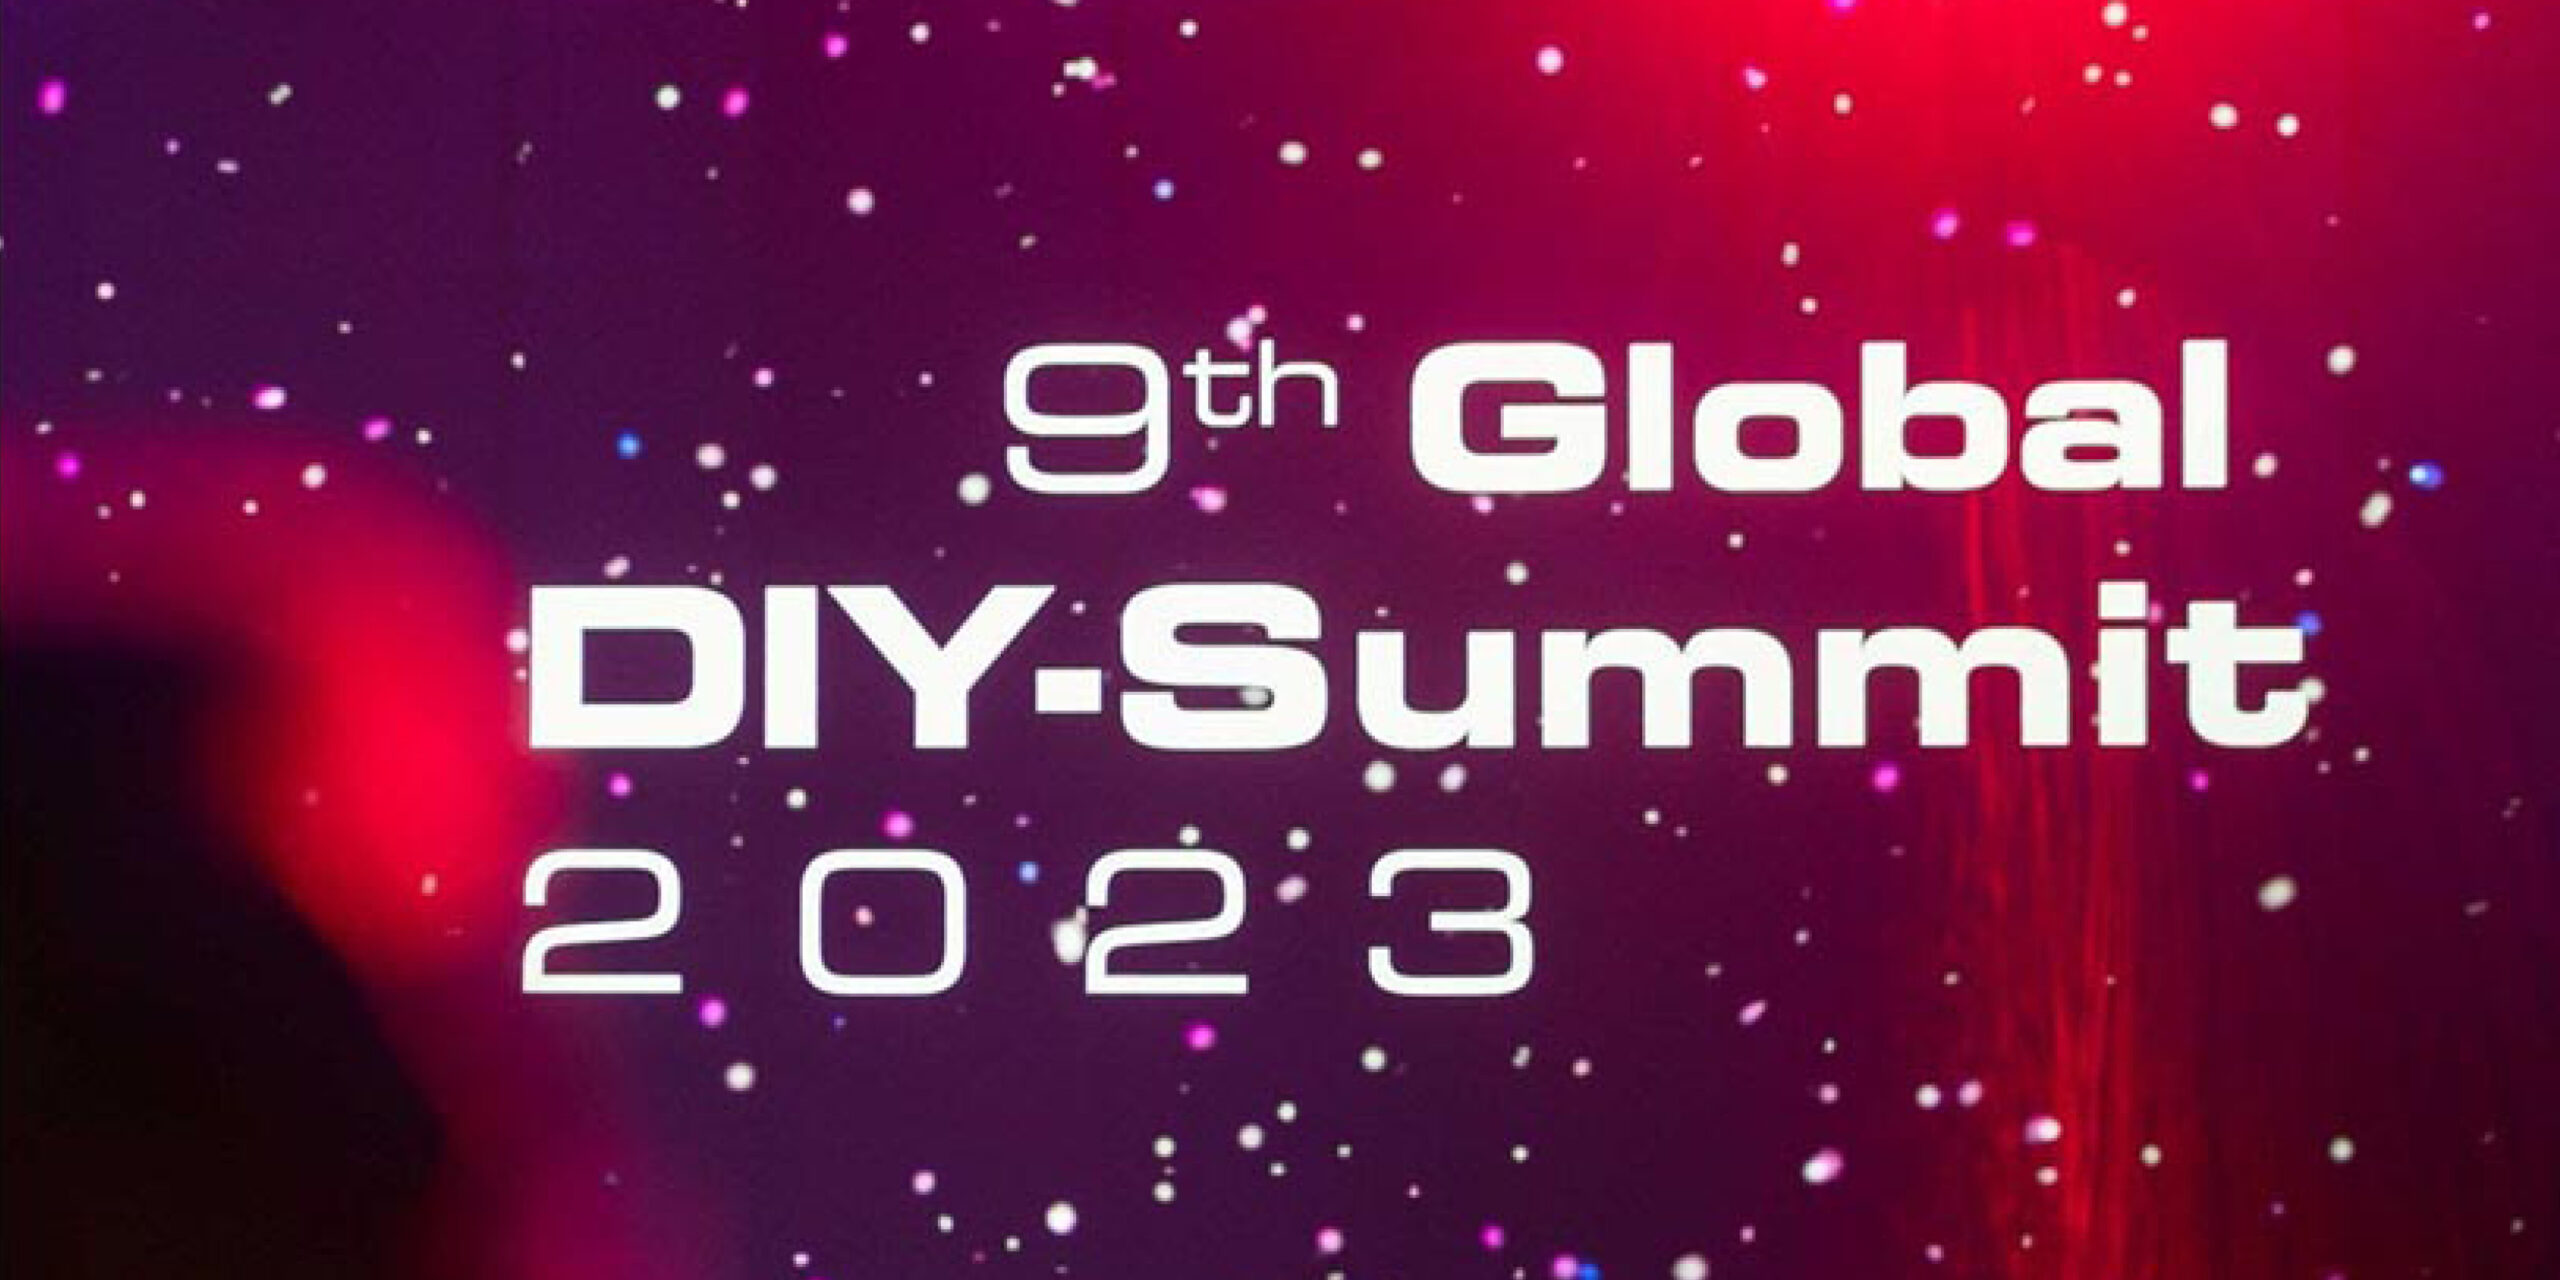 9th Global DIY Summit22